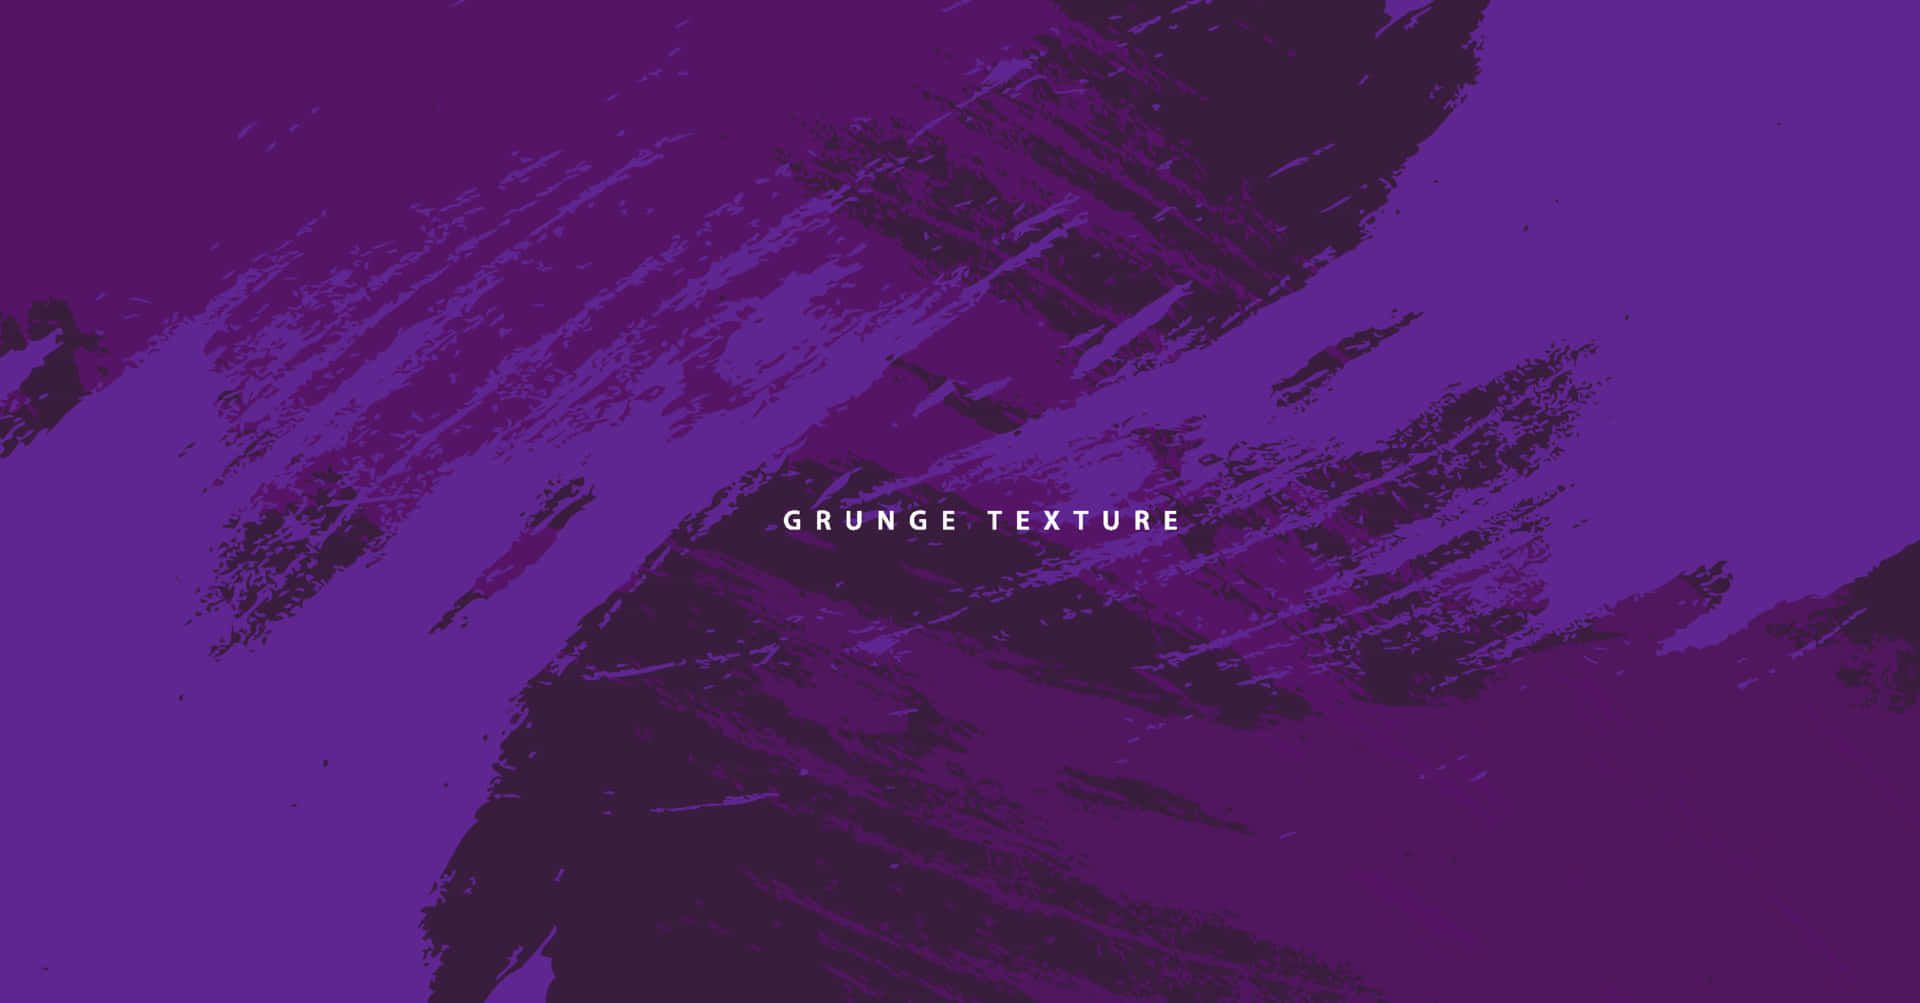 A grunge texture background image - Grunge